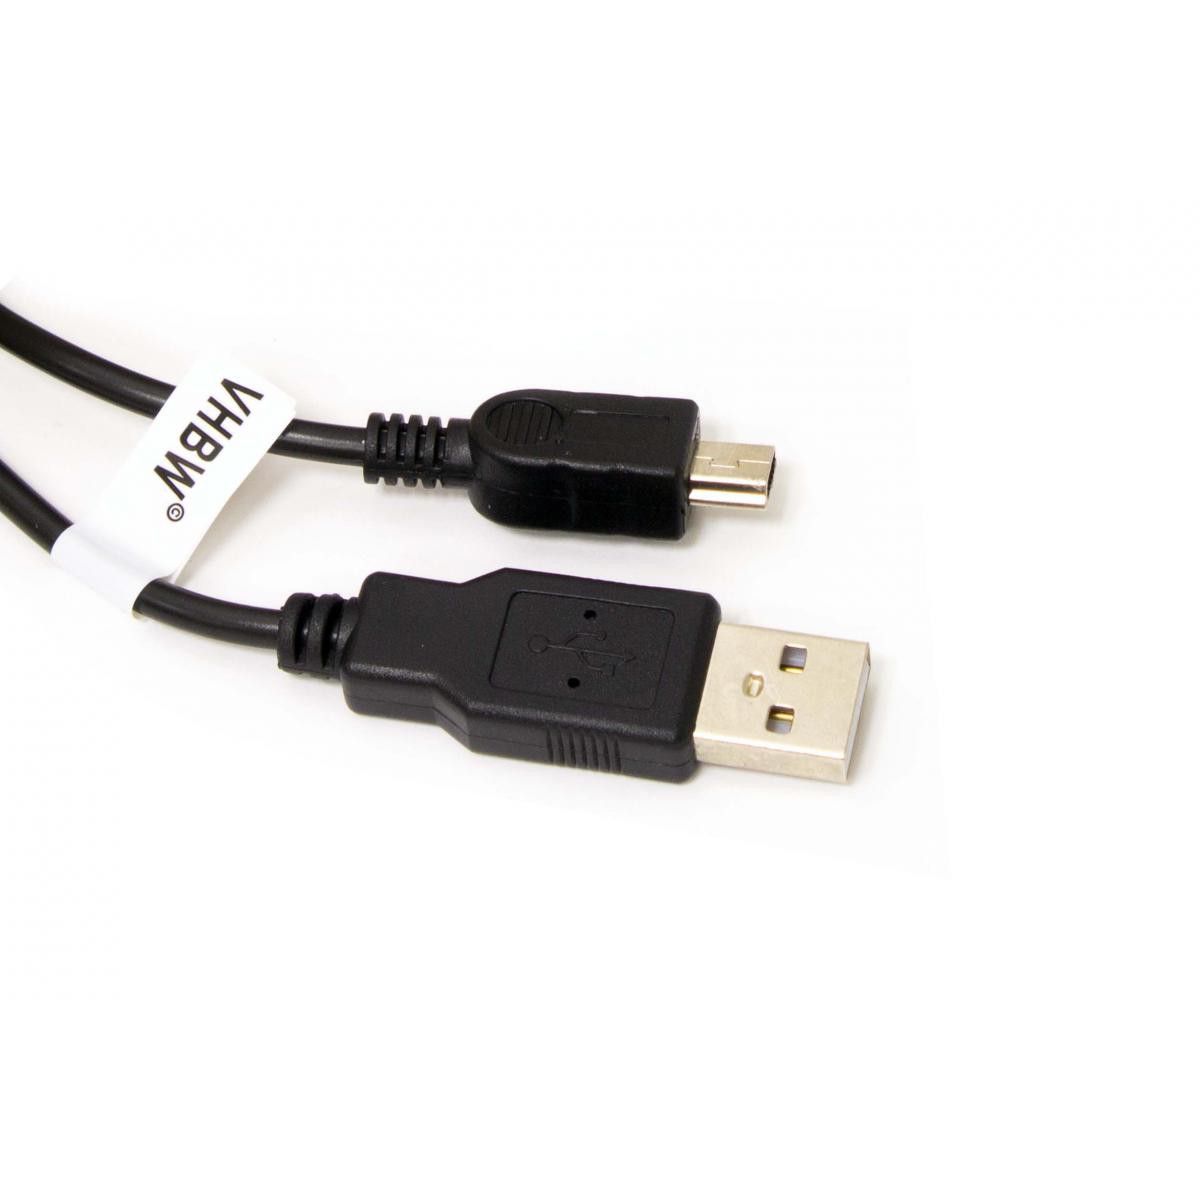 Vhbw - Câble USB A-Mini-B 5 pôles noir/black, longueur 1m, pour JVC GC-WP10, Picsio GC-FM1, GR-D70 etc. - Câble antenne